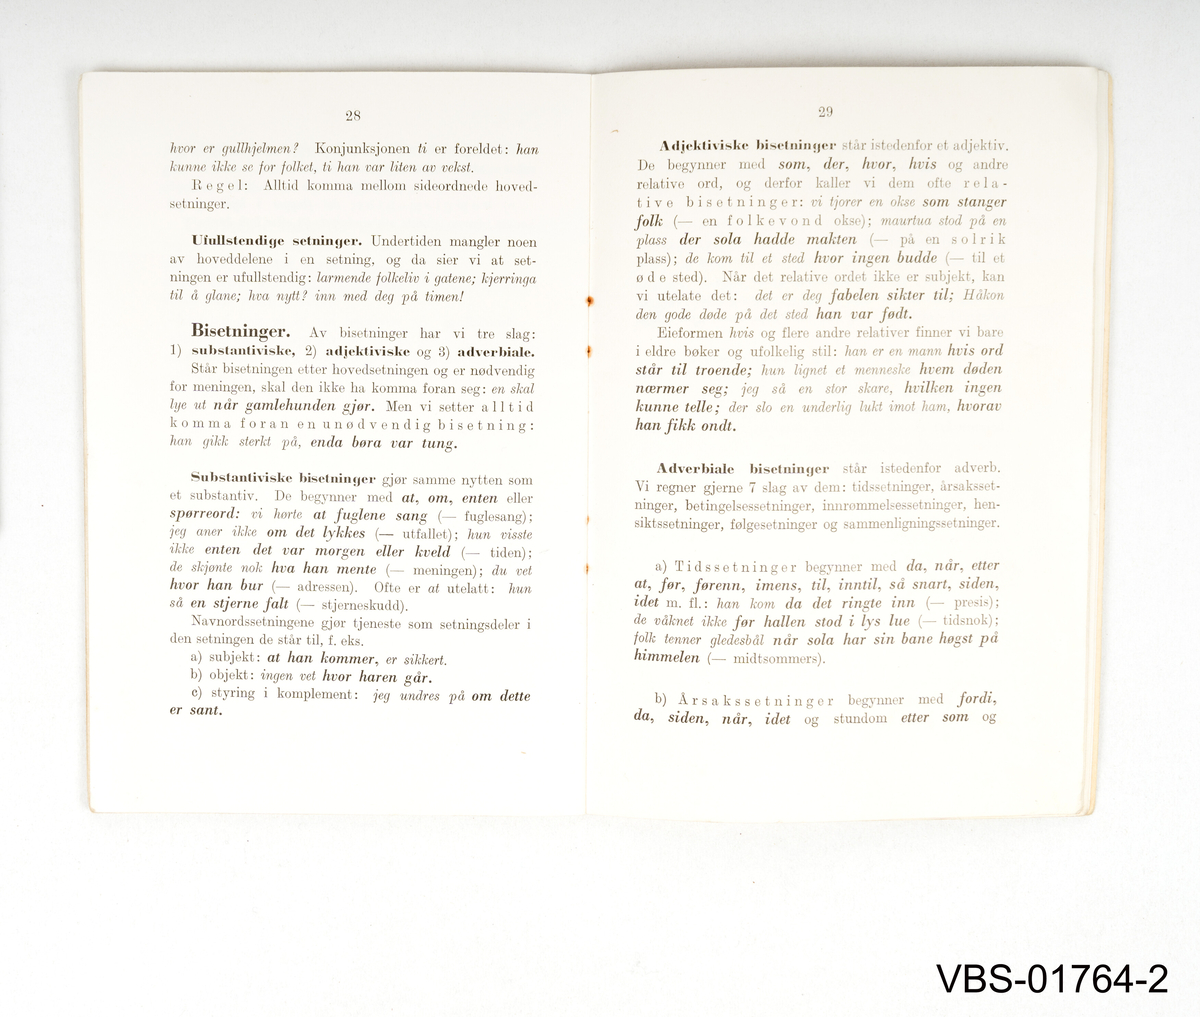 Norsk Grammatikk hefte. 
37 sider, utgitt og trykt i Oslo 1939